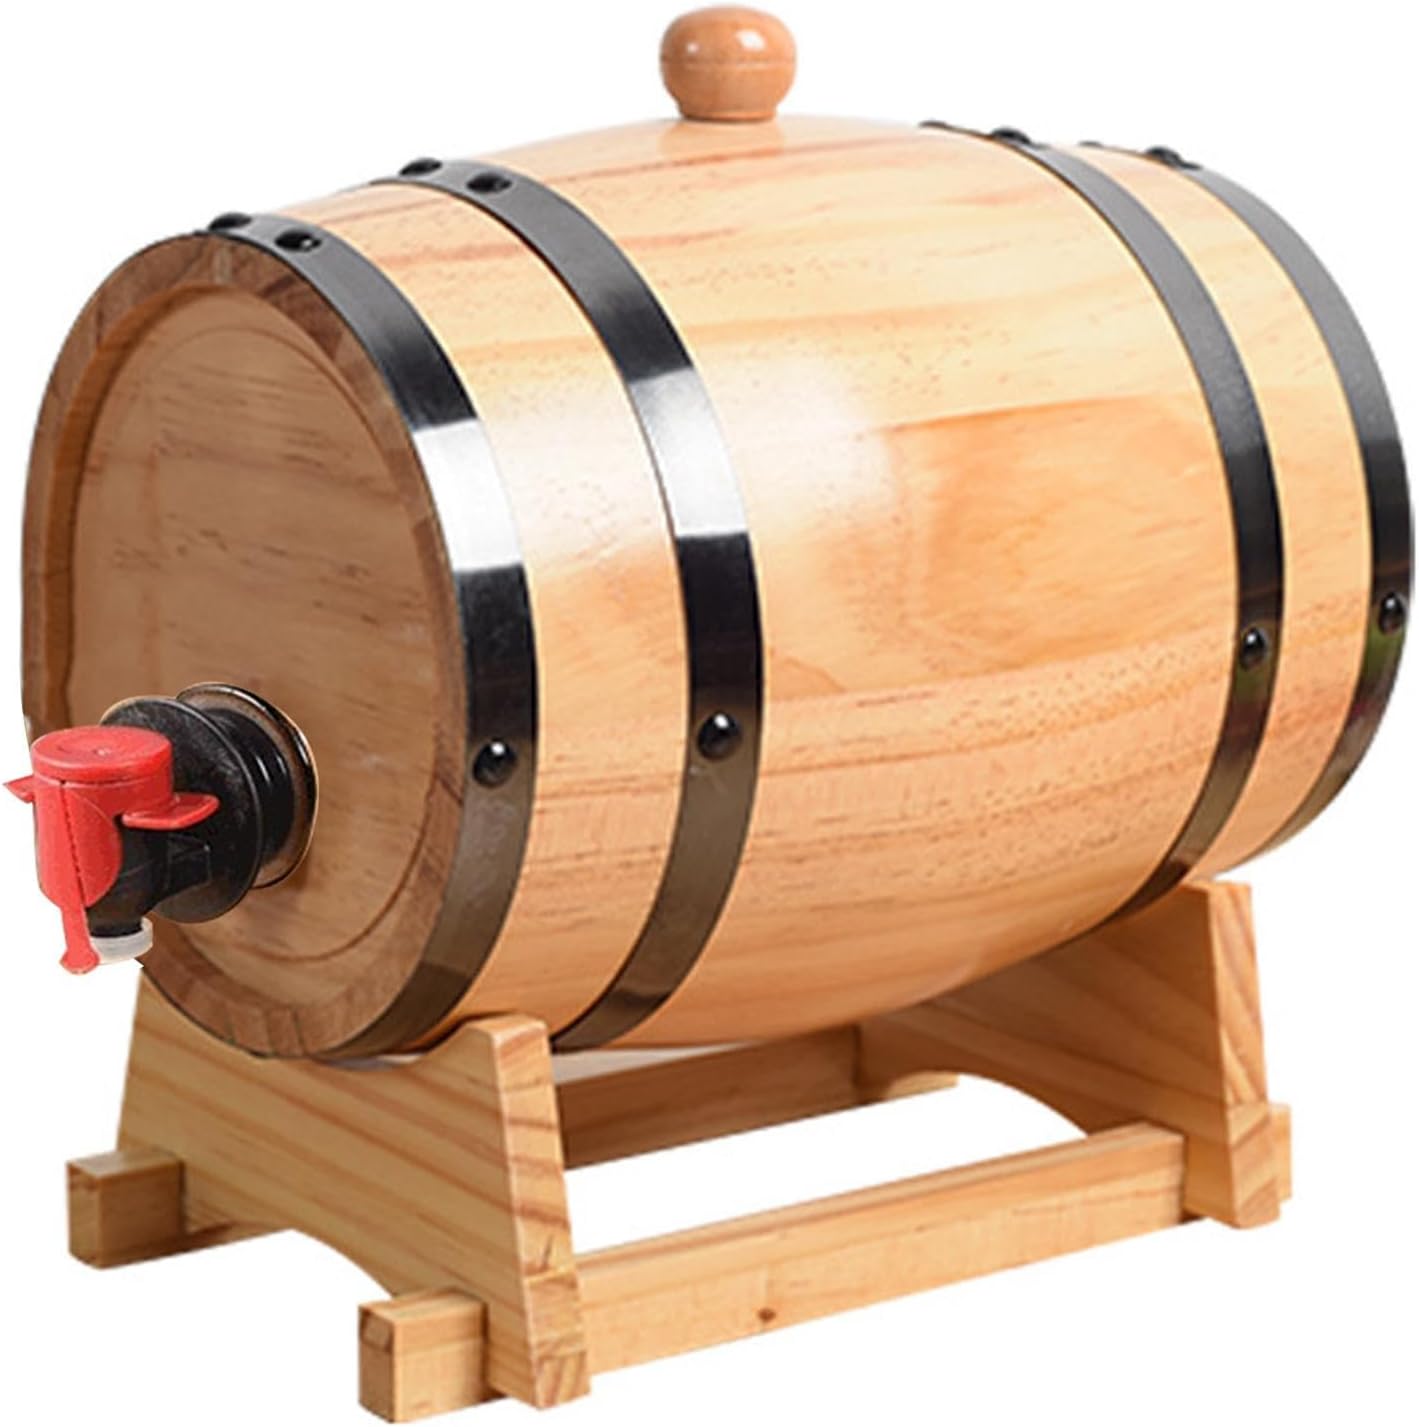 ミニオーク樽、木製ウイスキー樽、1L 1.5L 3L ワイン樽オーク木製樽ウイスキーディスペンサー、蛇口付き、天然オークウイスキー樽、ヴィンテージワイン樽、ミニオークバレル、テキーラ、エイジカクテル、ワイン、バーボン、ラム用ウッドウイスキーバレル